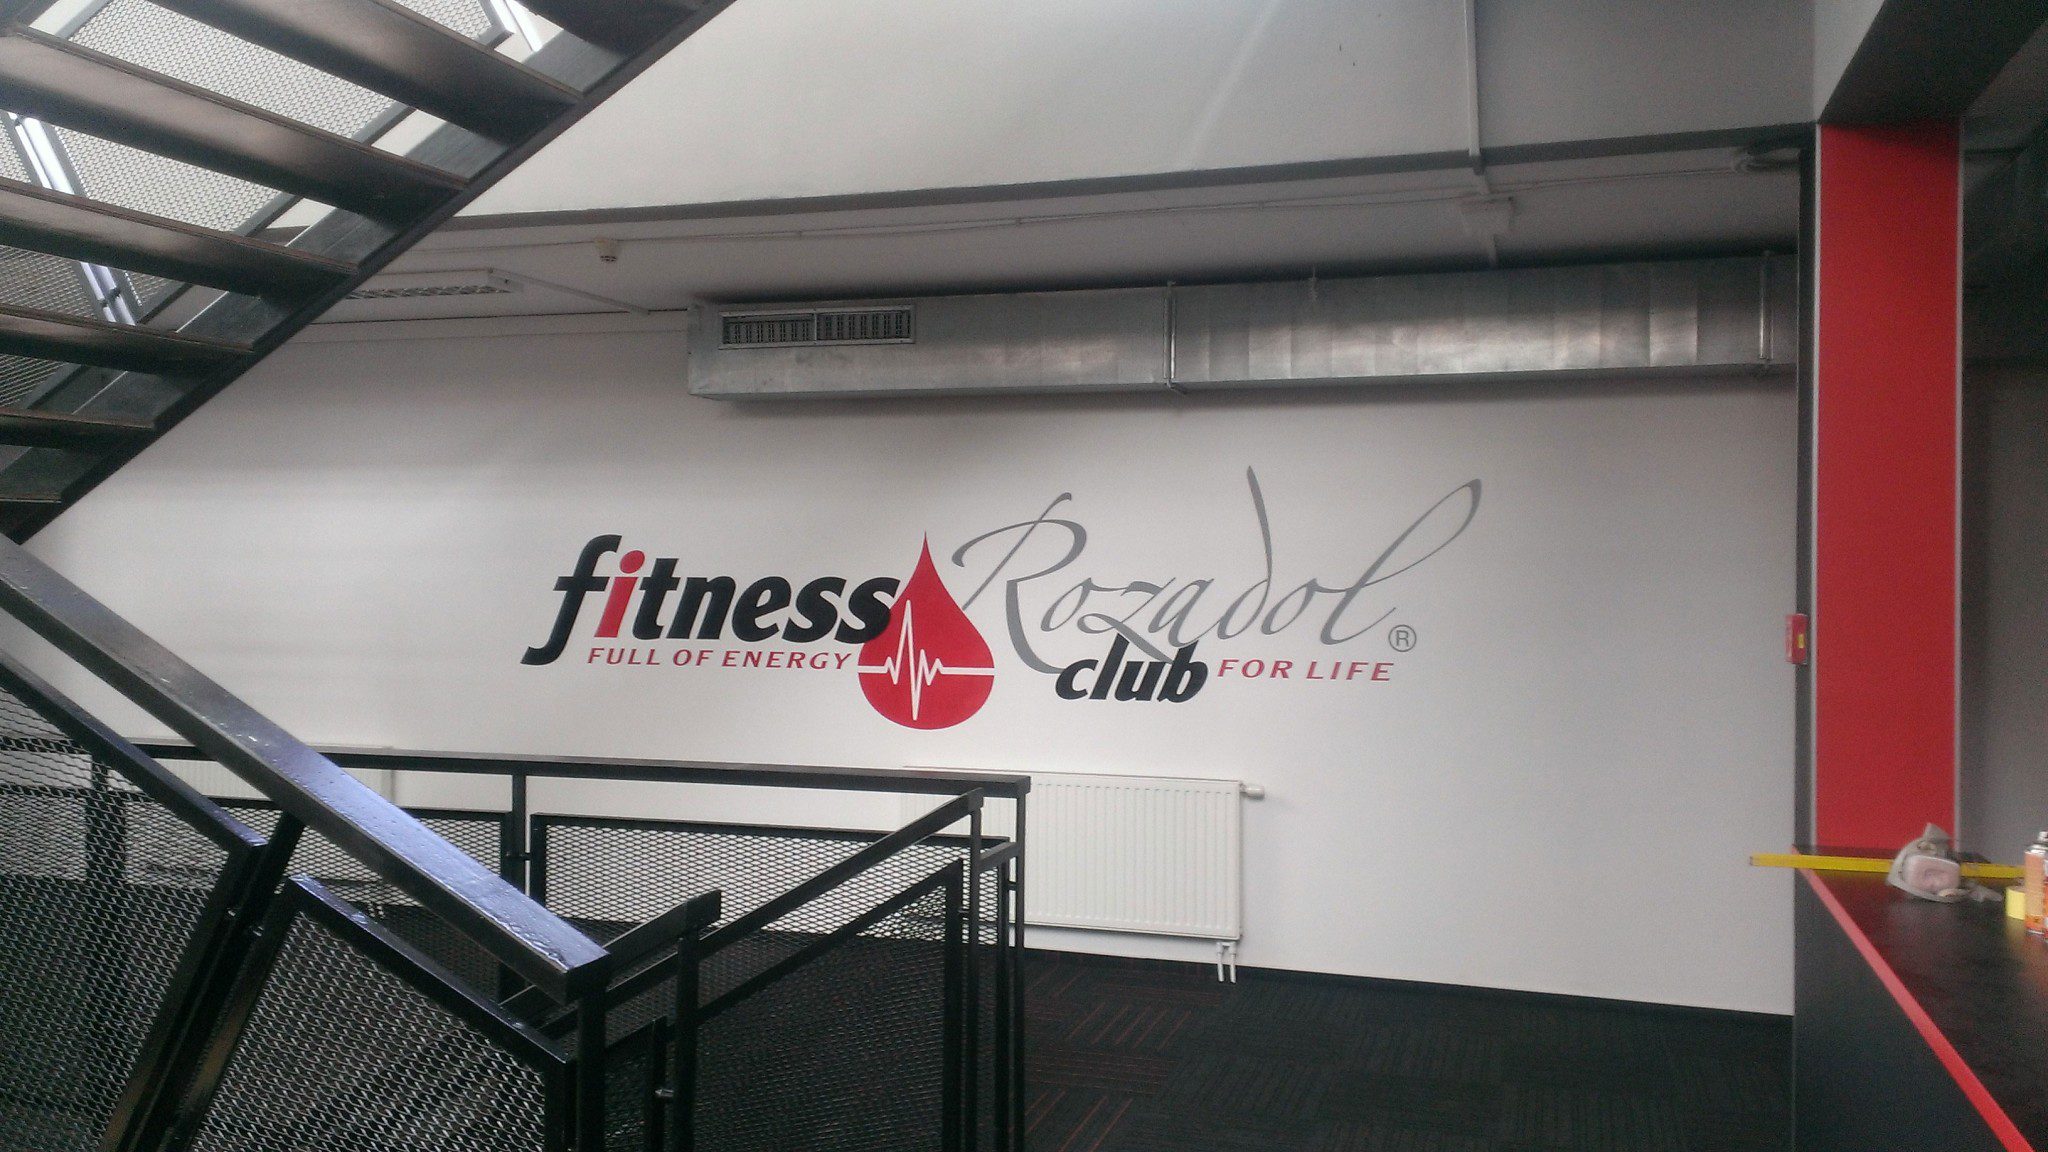 Plakatwand - Fitness Rozadol club